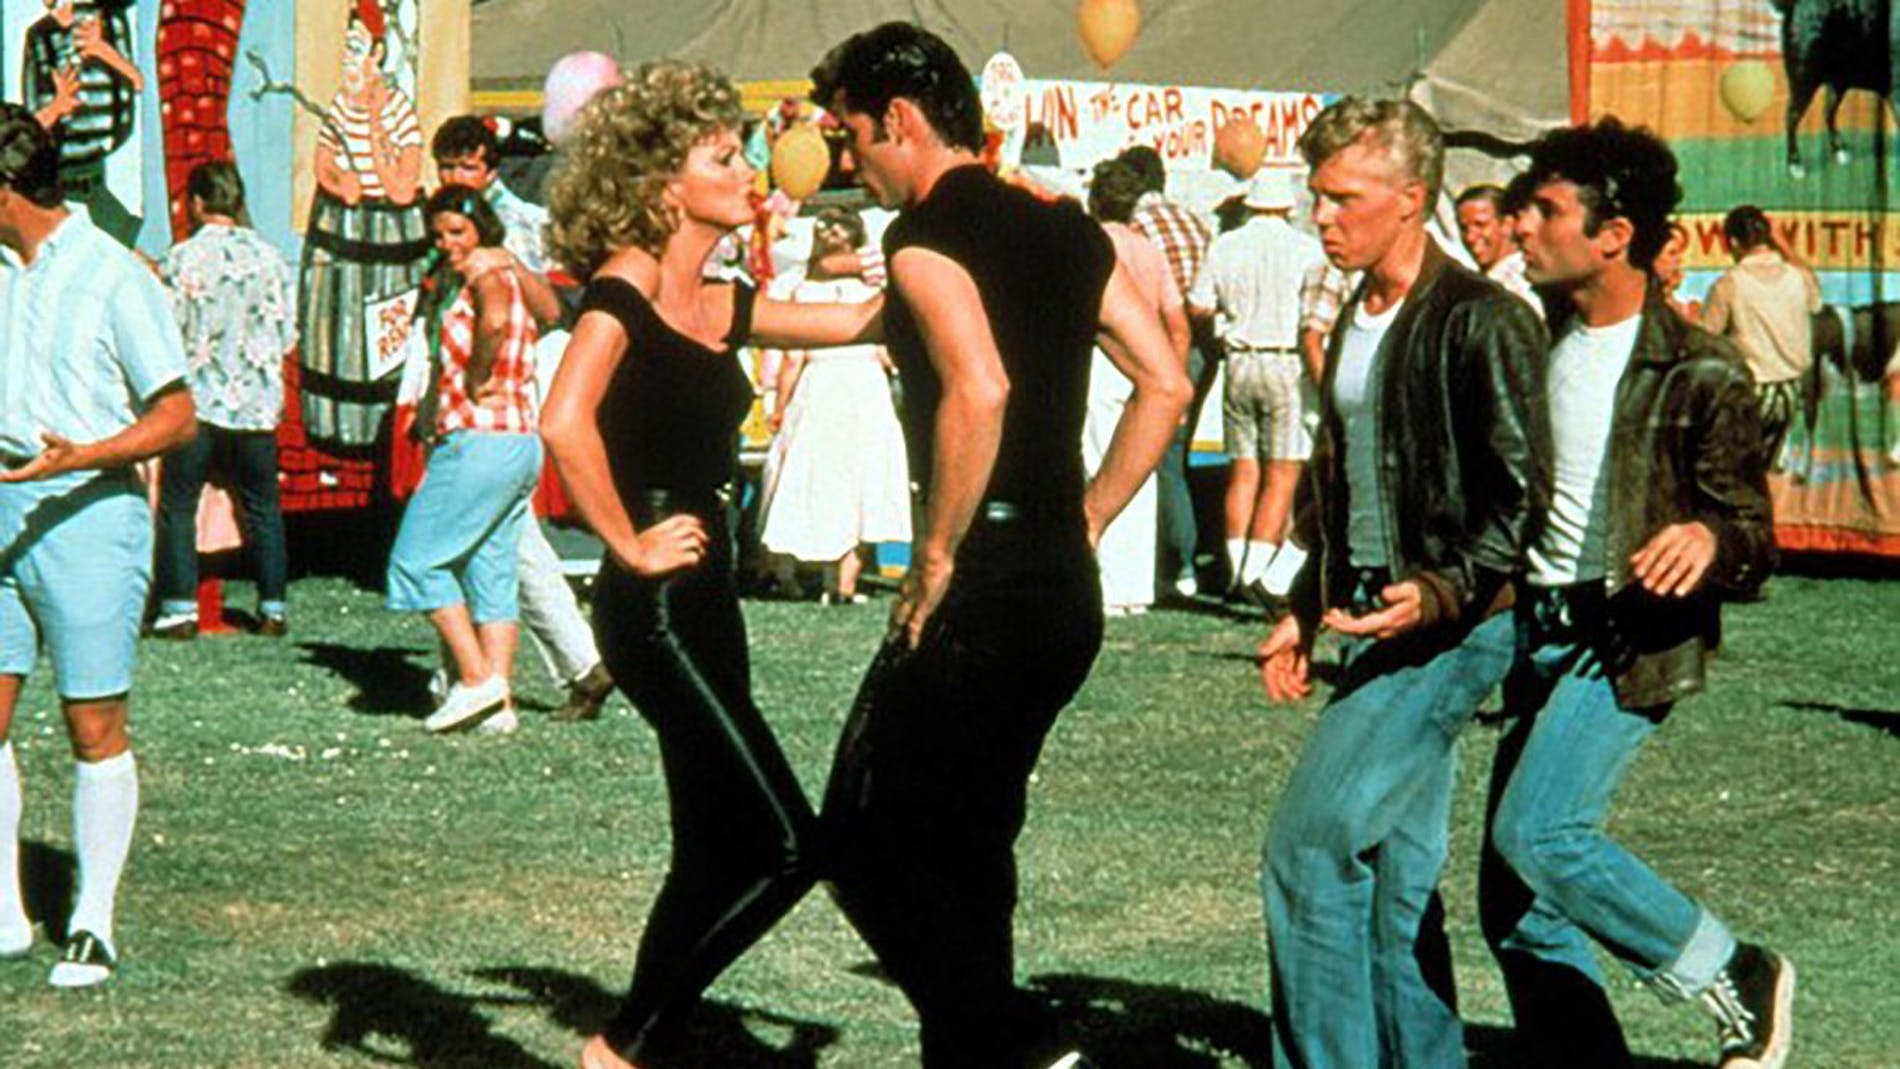 Cena do filme grease, em que john travolta e olivia newton-john estão dançando.